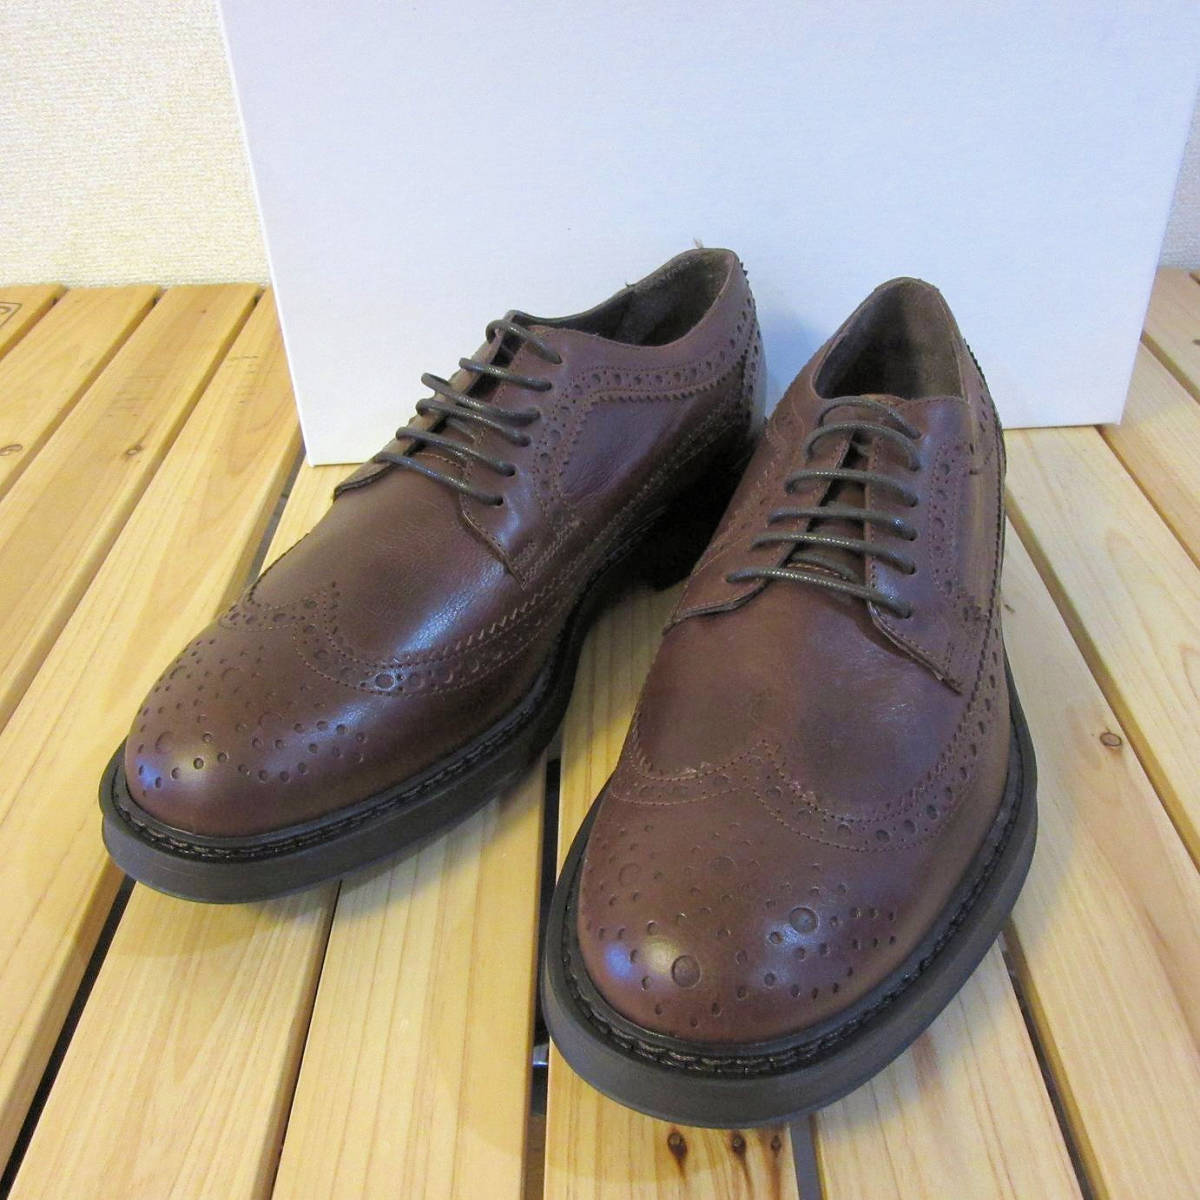 未使用 やや傷・スレあり BOEMOS ボエモス レザーシューズ 革靴 ブローグシューズ ビジネスシューズ ブラウン 茶色 メンズ 41 26cm 程度